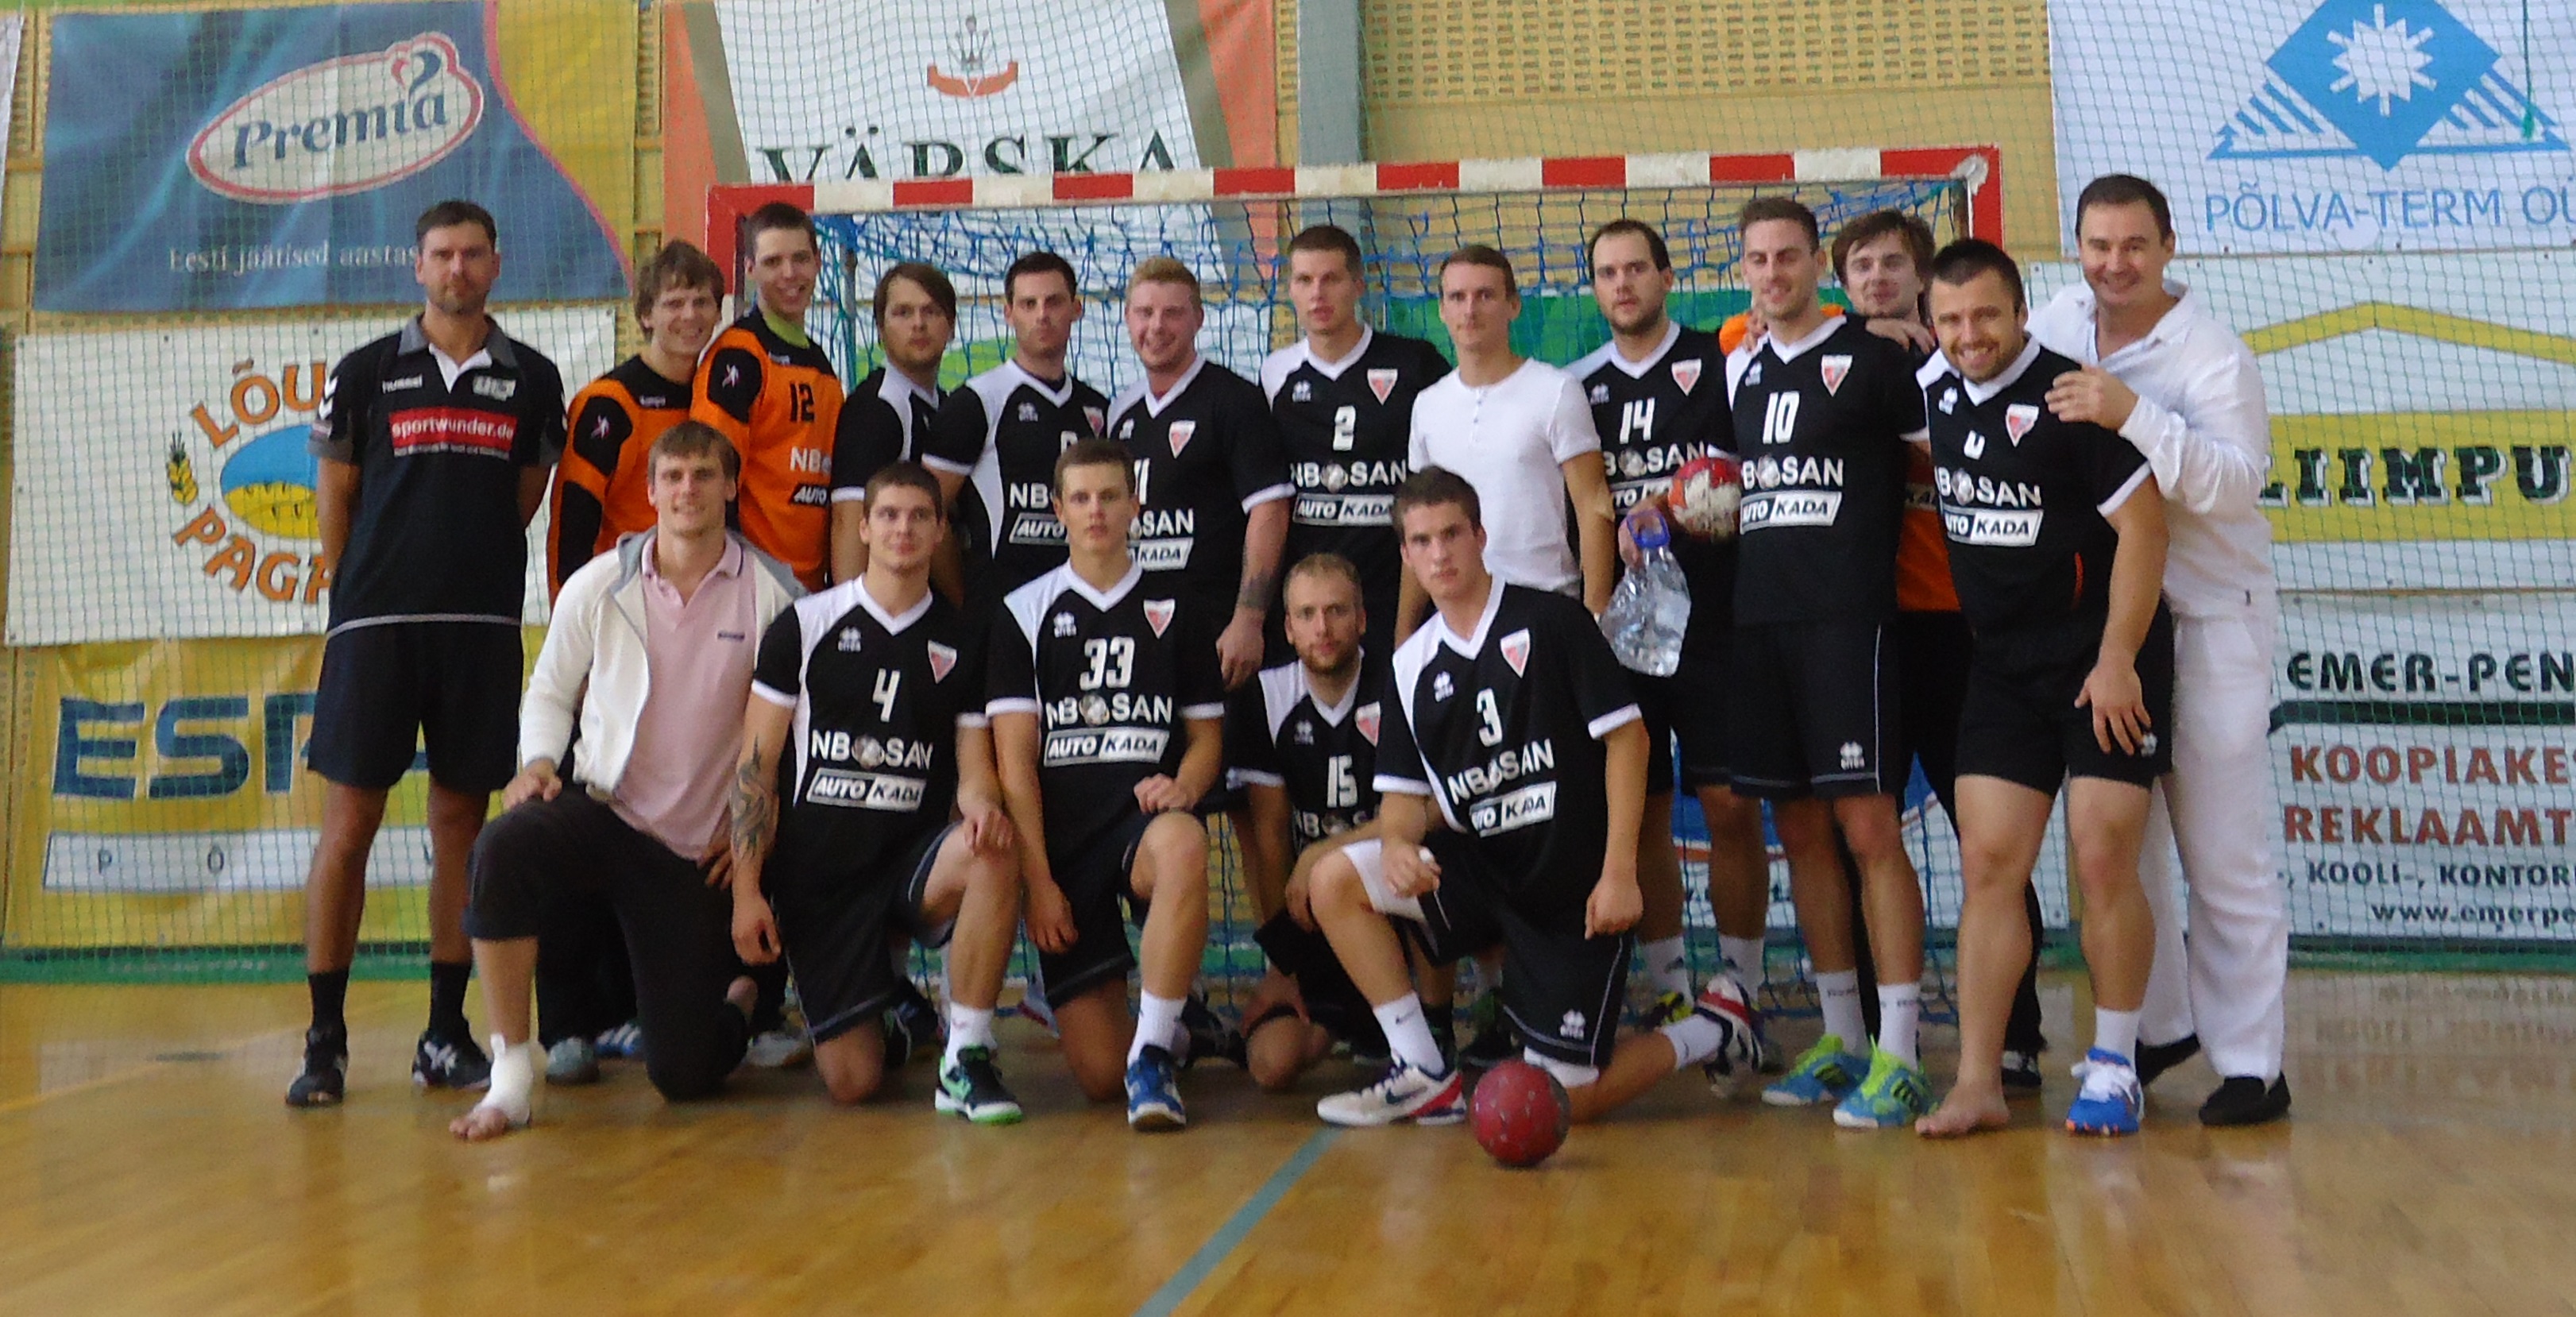 Celtnieks/LSPA Polva Cup 2013